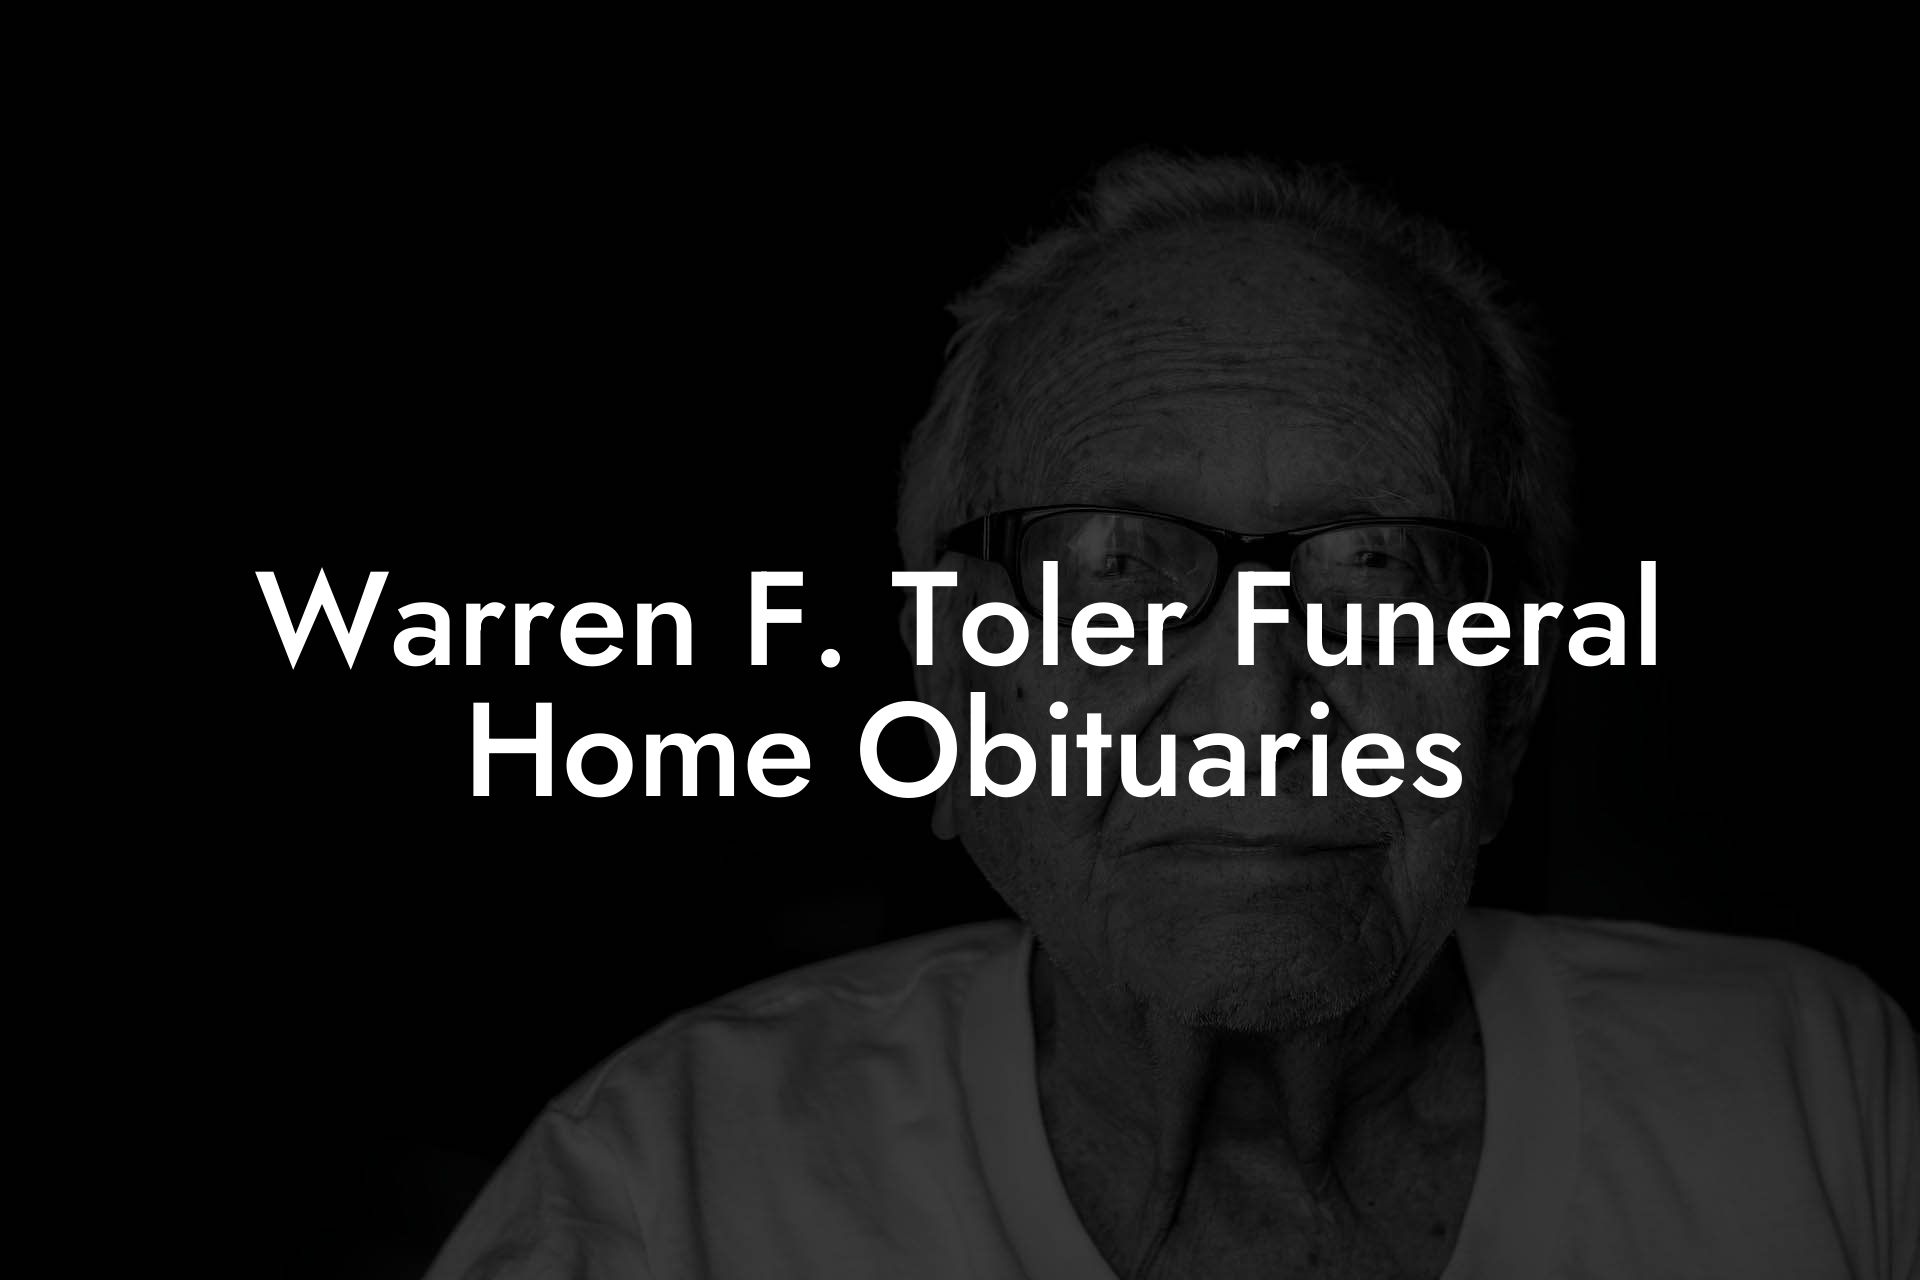 Warren F. Toler Funeral Home Obituaries